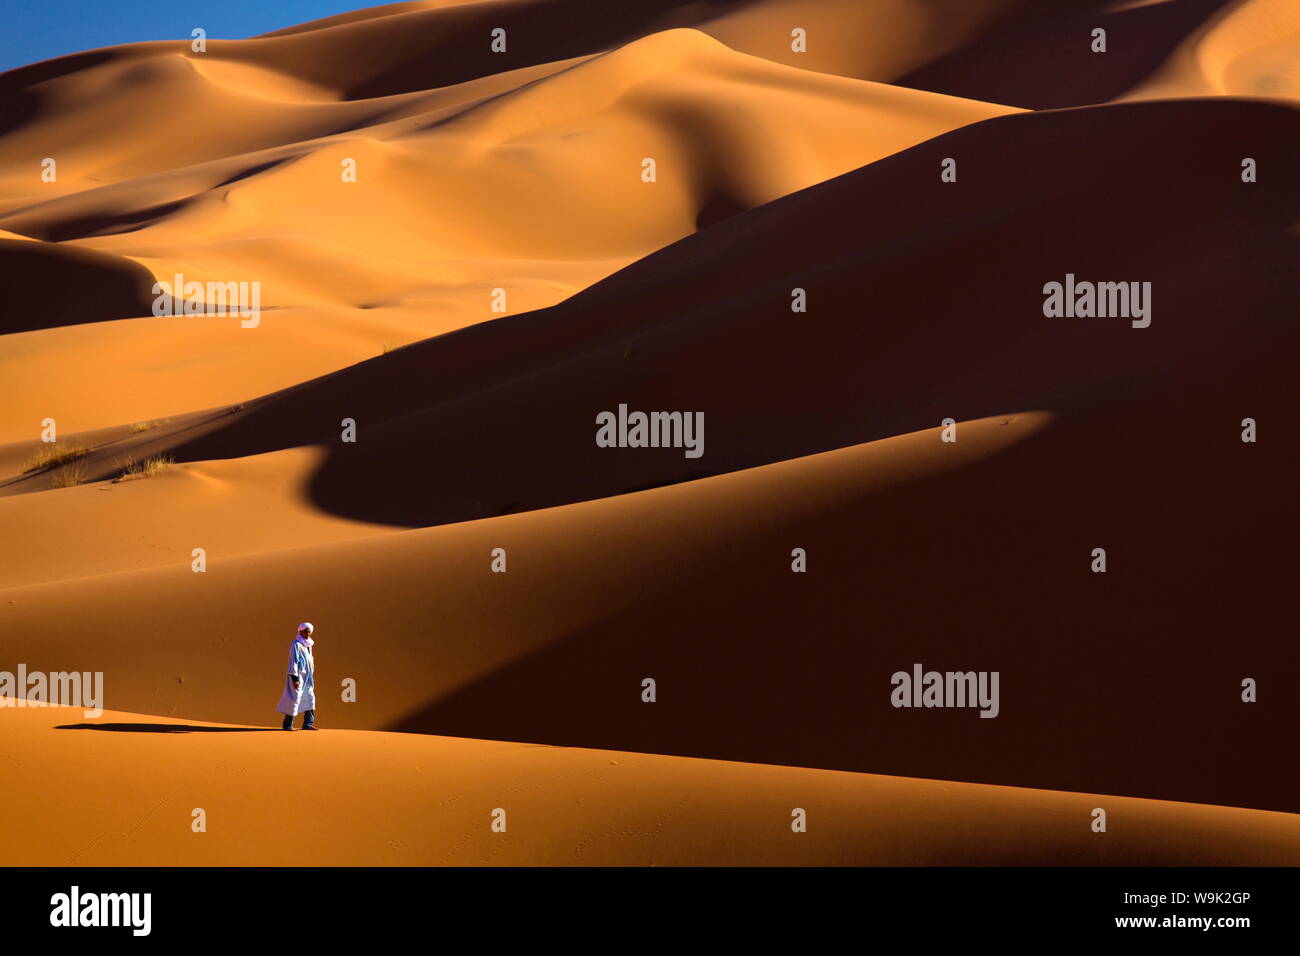 Homme berbère marcher parmi les dunes de sable orange de l'Erg Chebbi, la mer de sable du désert du Sahara, près de Merzouga, Maroc, Afrique du Nord, Afrique Banque D'Images